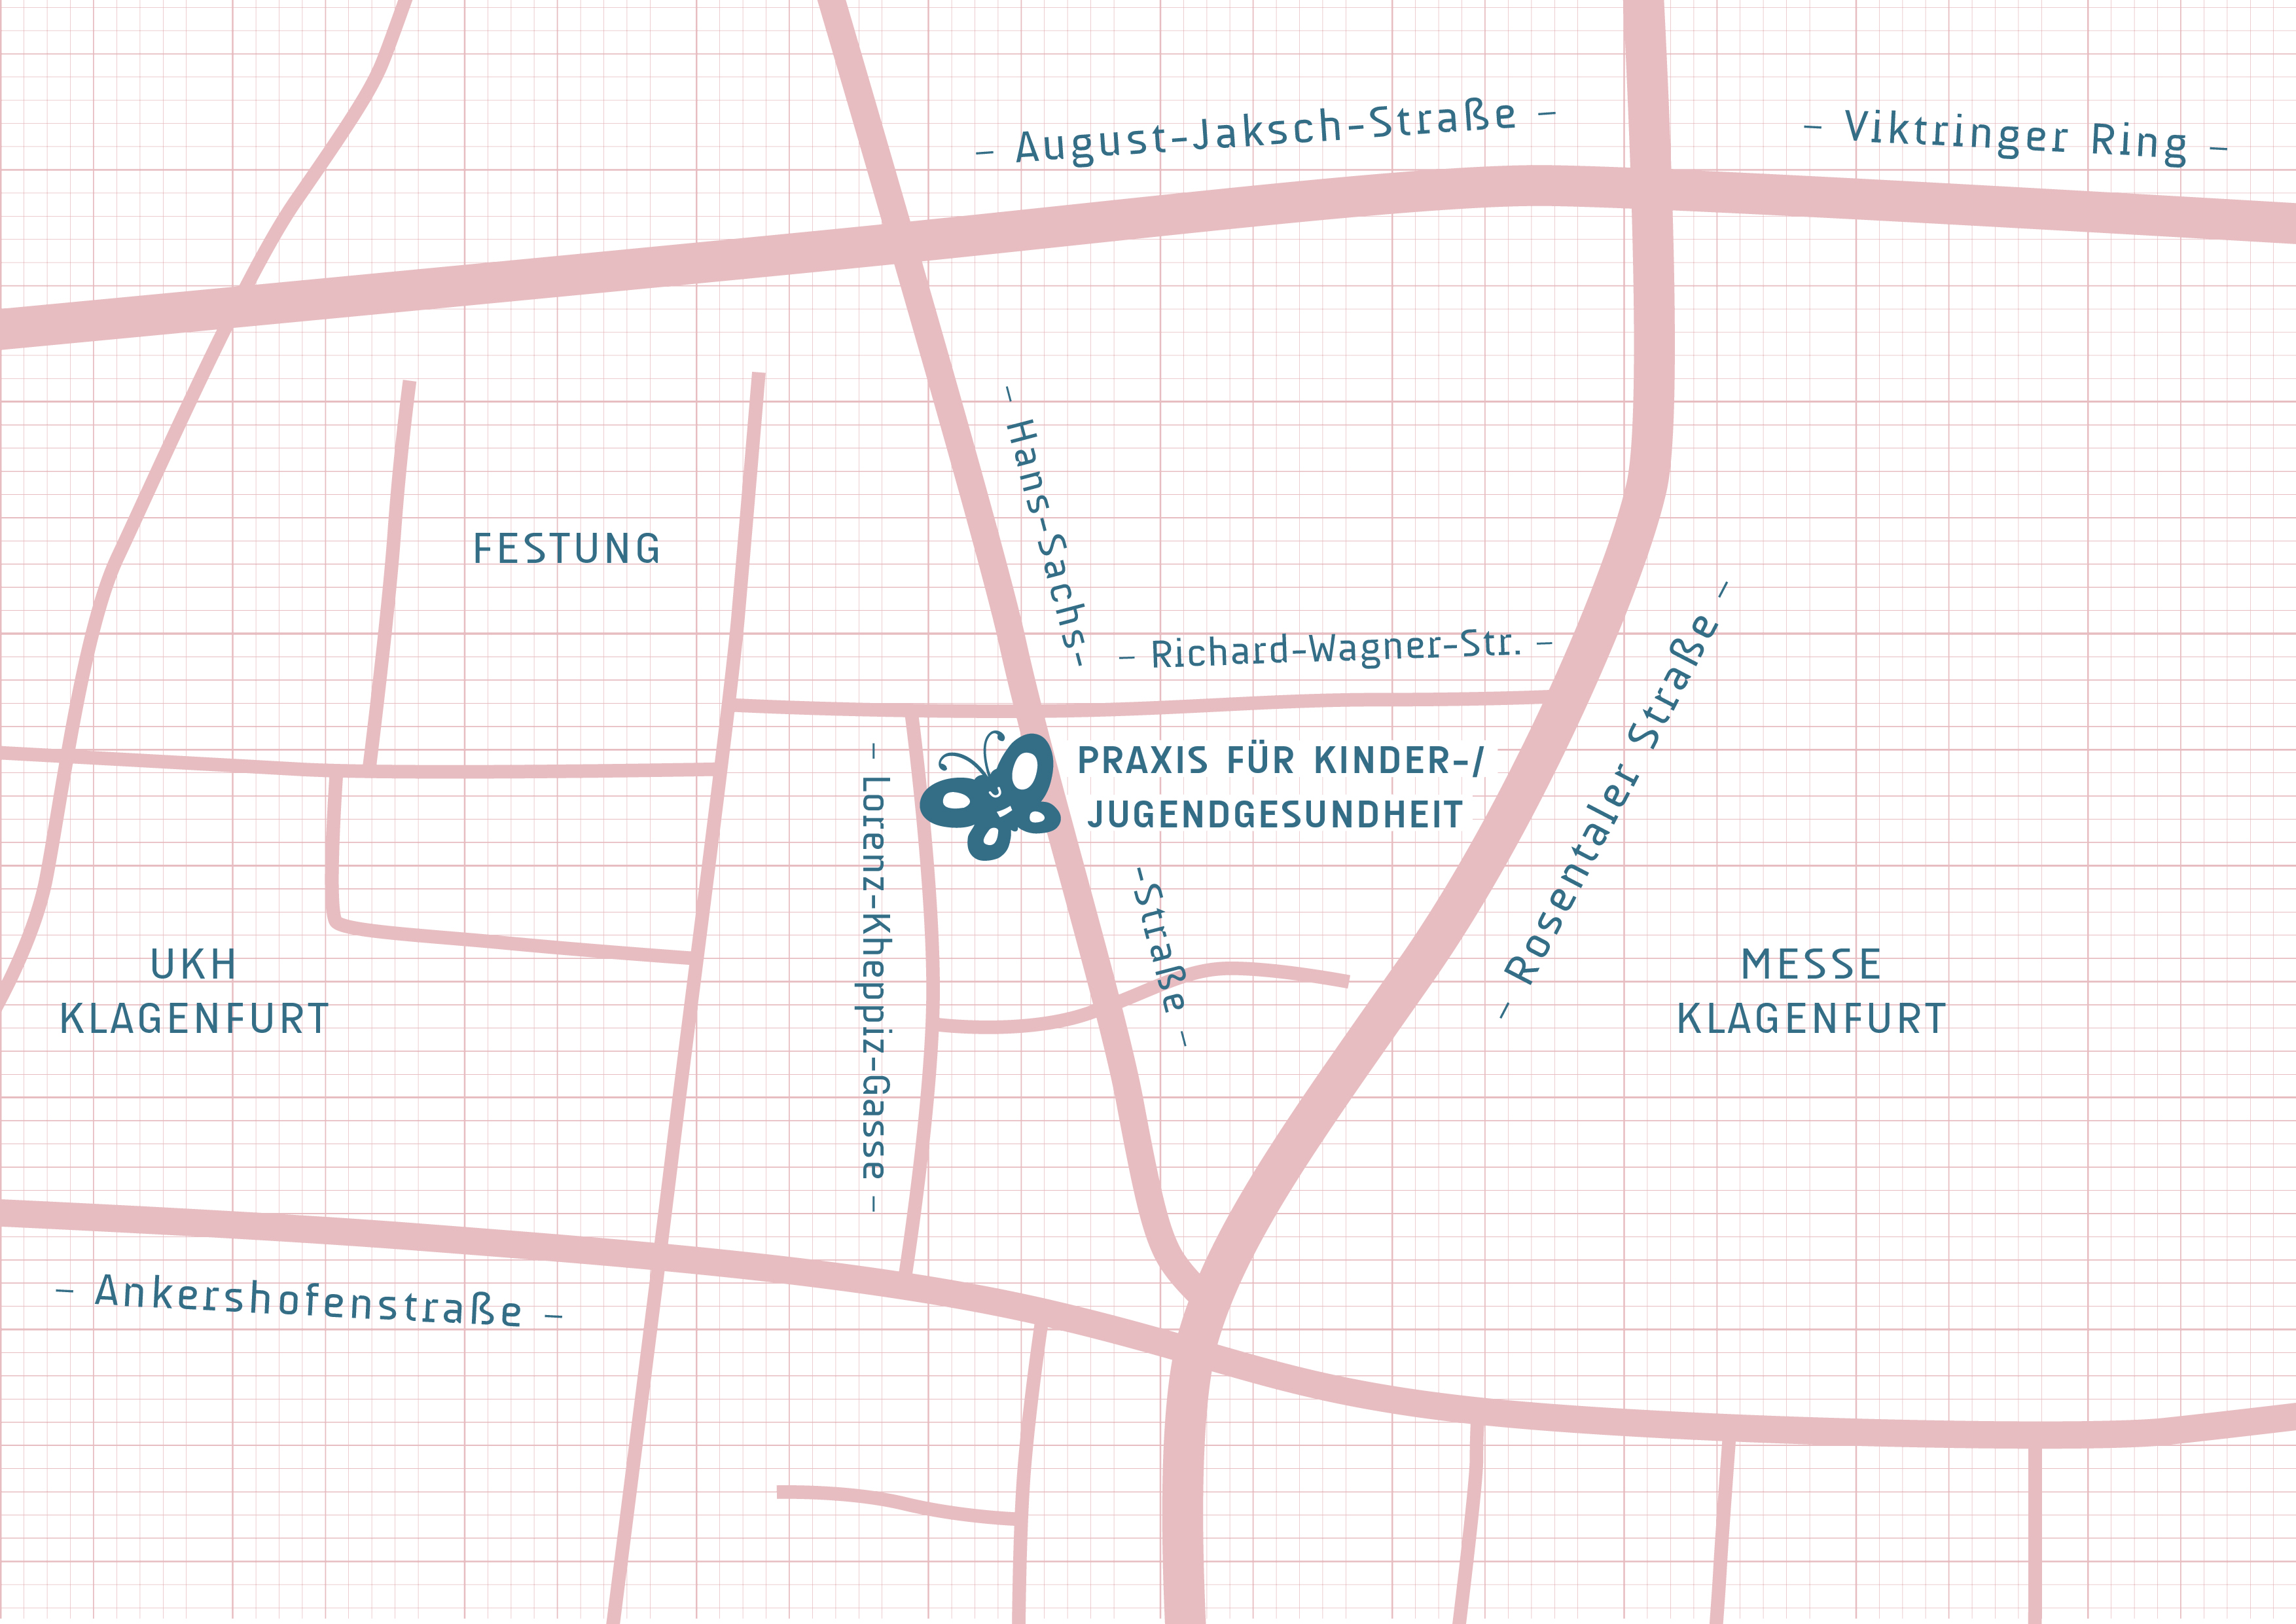 Klagenfurt, Praxis für Kinder- und Jugendgesundheit, Standort, Hans-Sachs-Straße, Klagenfurt